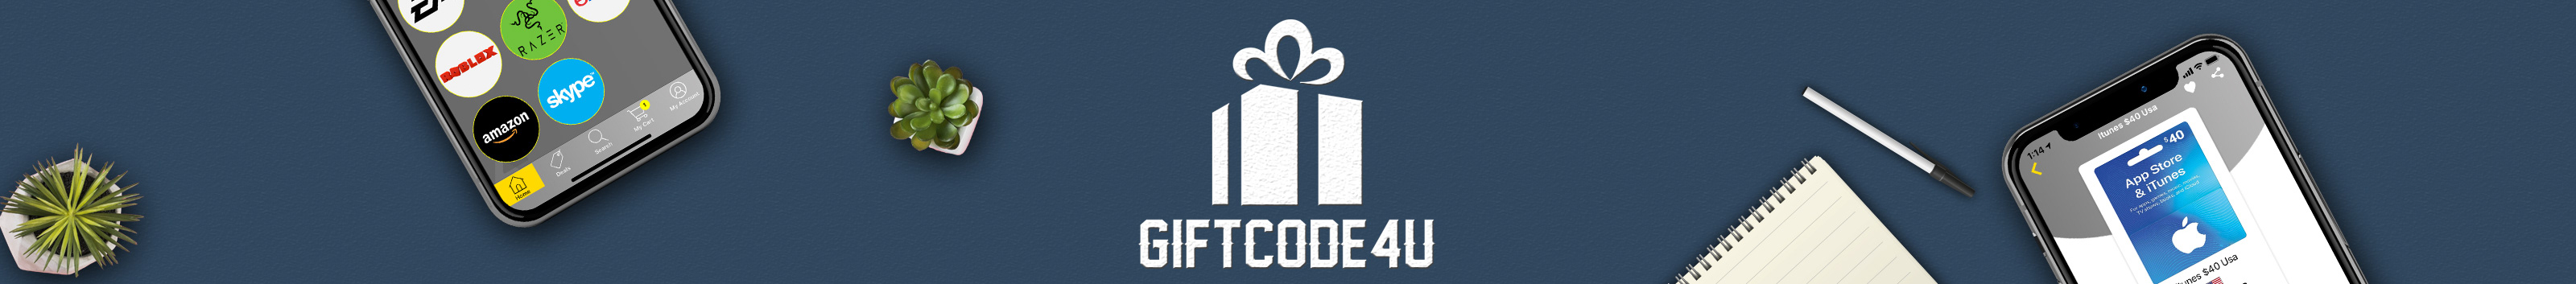 GiftCode 4U's profile banner